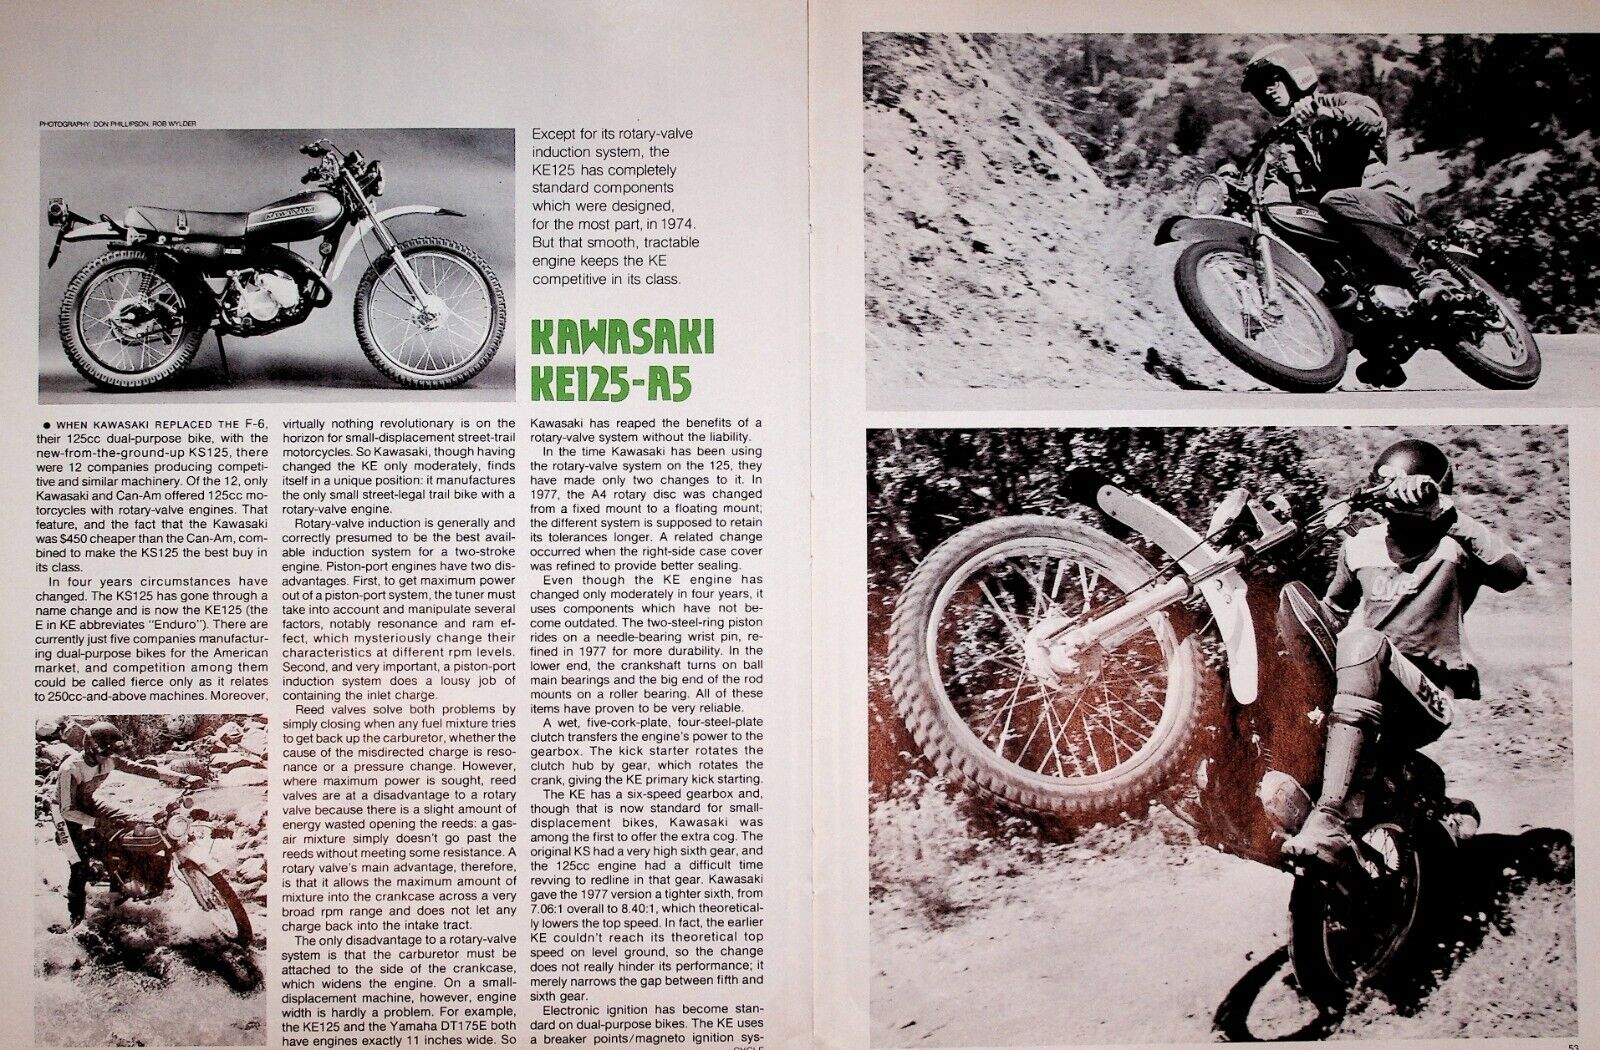 1978 Kawasaki KE125-A5 - 5-Page Vintage Motorcycle Road Test Article